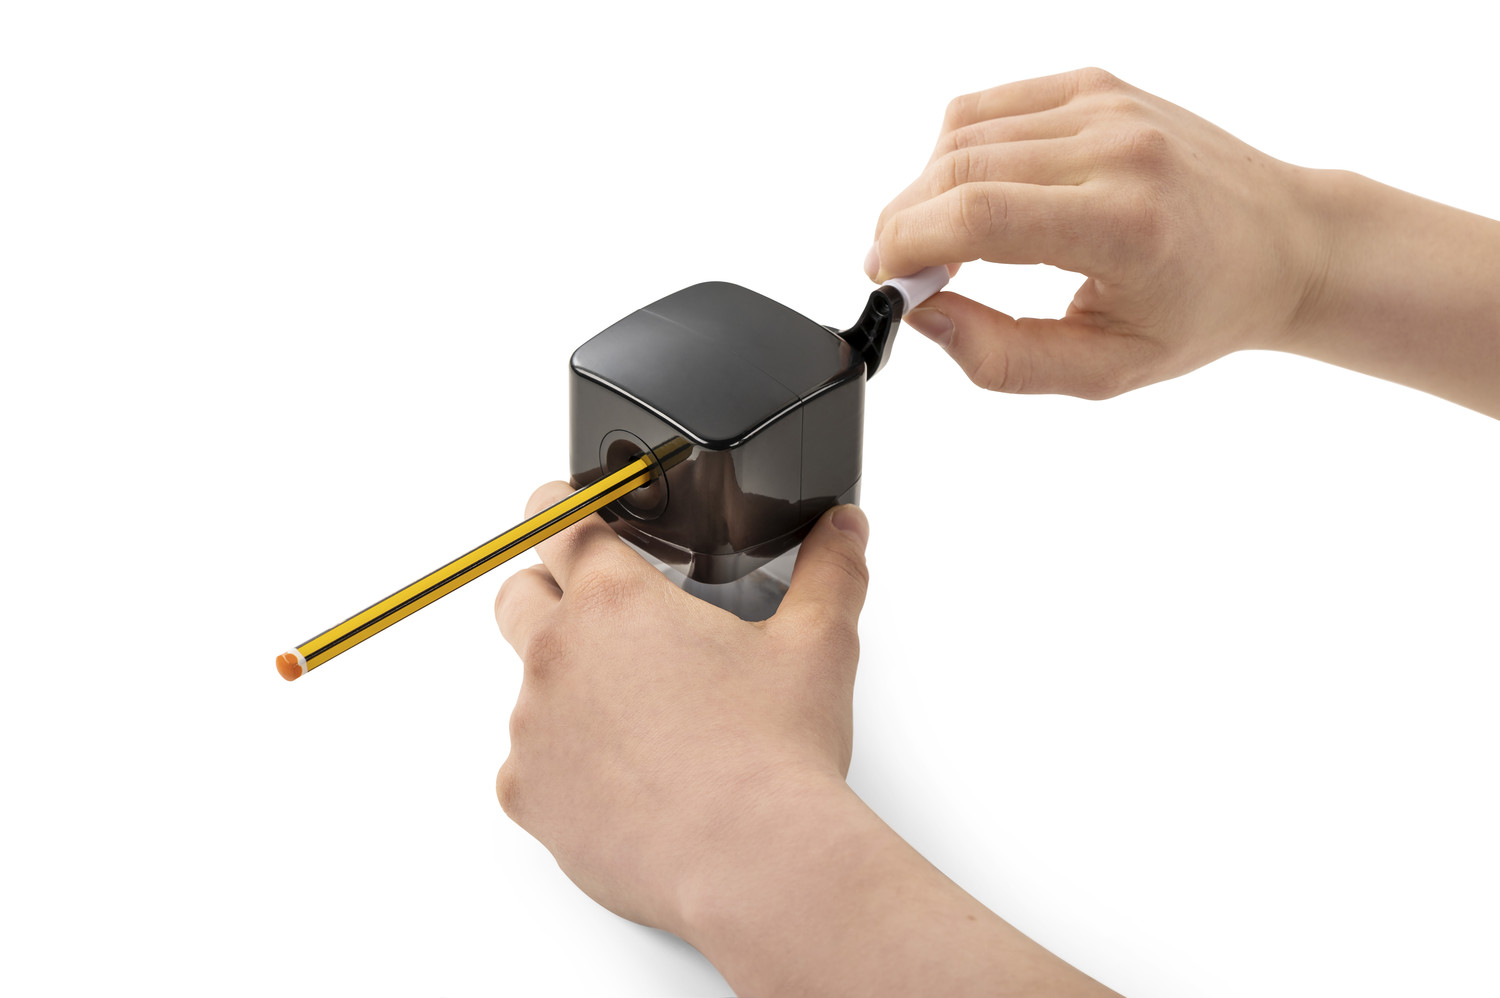 Dank Kurbelantrieb stellt sich der Stift beim Einführen in die Spitzmaschine fest - kein Drehen, Ziehen oder Feststellen notwendig.